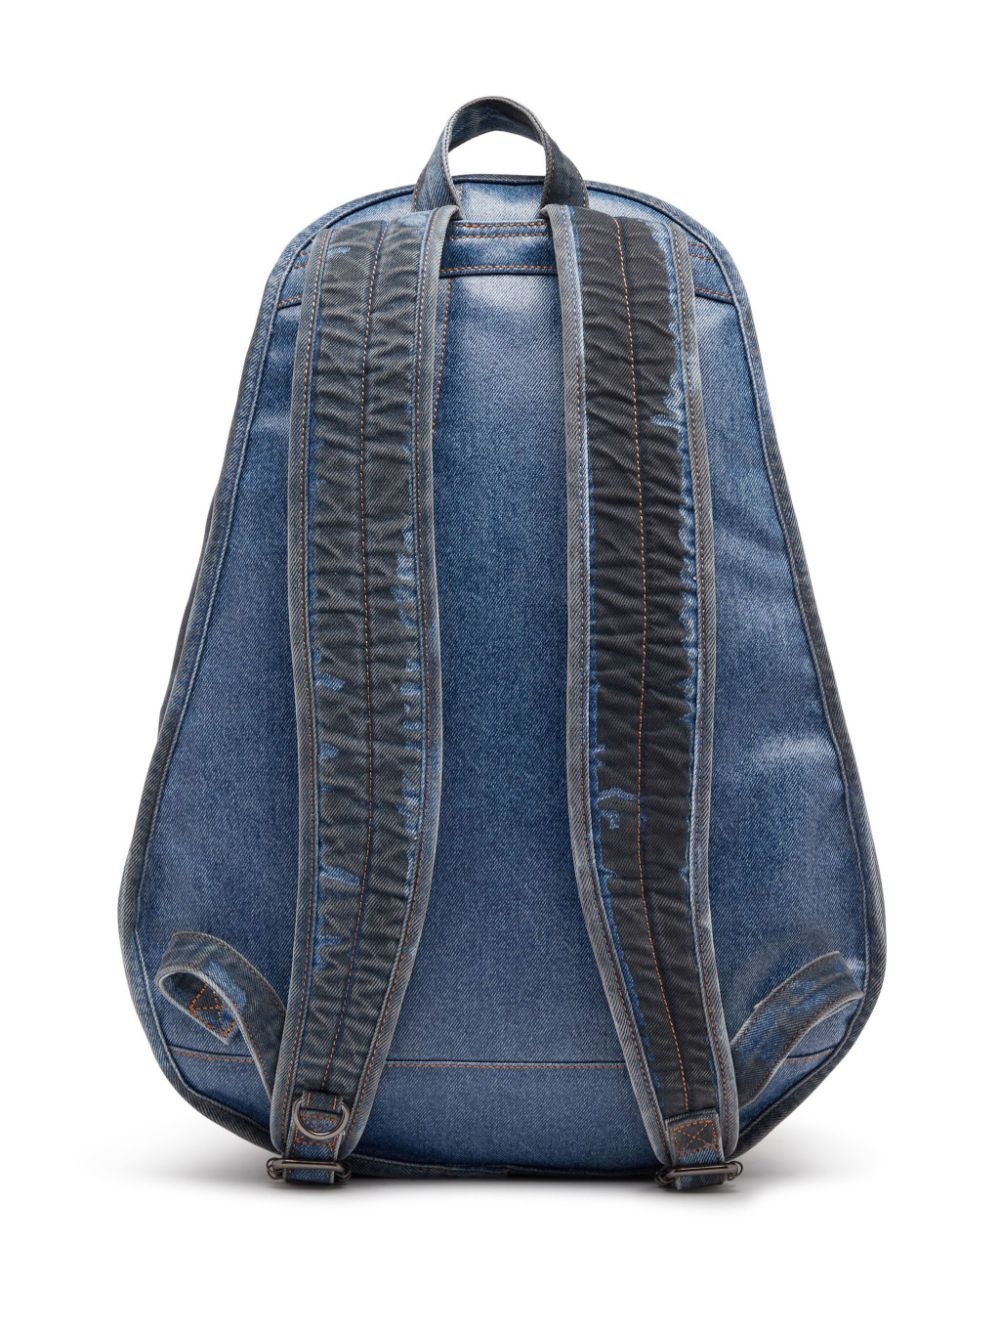 Rave coated denim backpack - 2